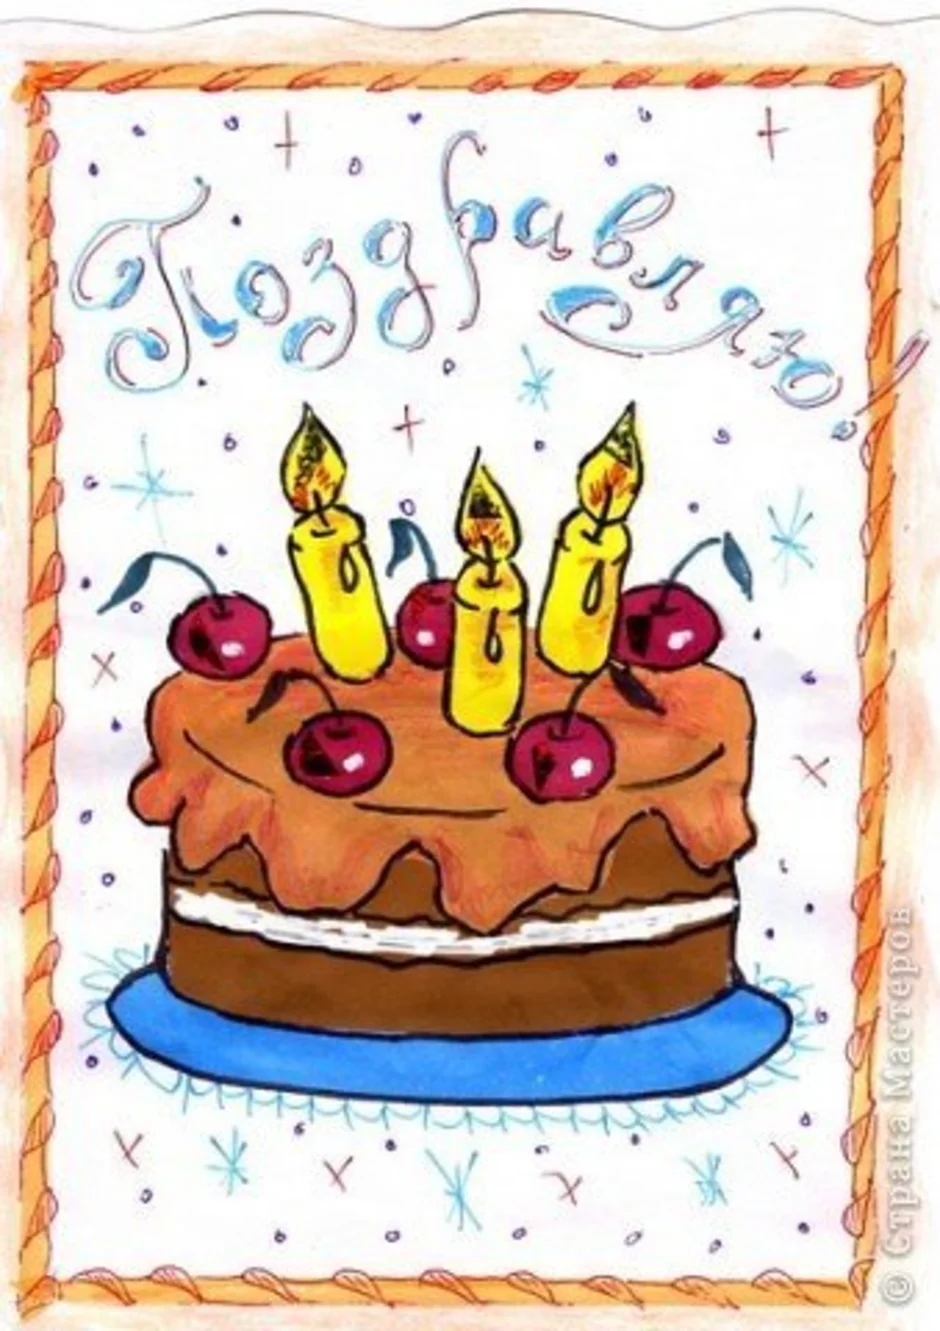 Что можно дедушке нарисовать на день рождения. Рисунок на день рождения. Рисунки на день рождения лёгкие. Открытка с днём рождения рисунок. Рисованные открытки с днем рождения.